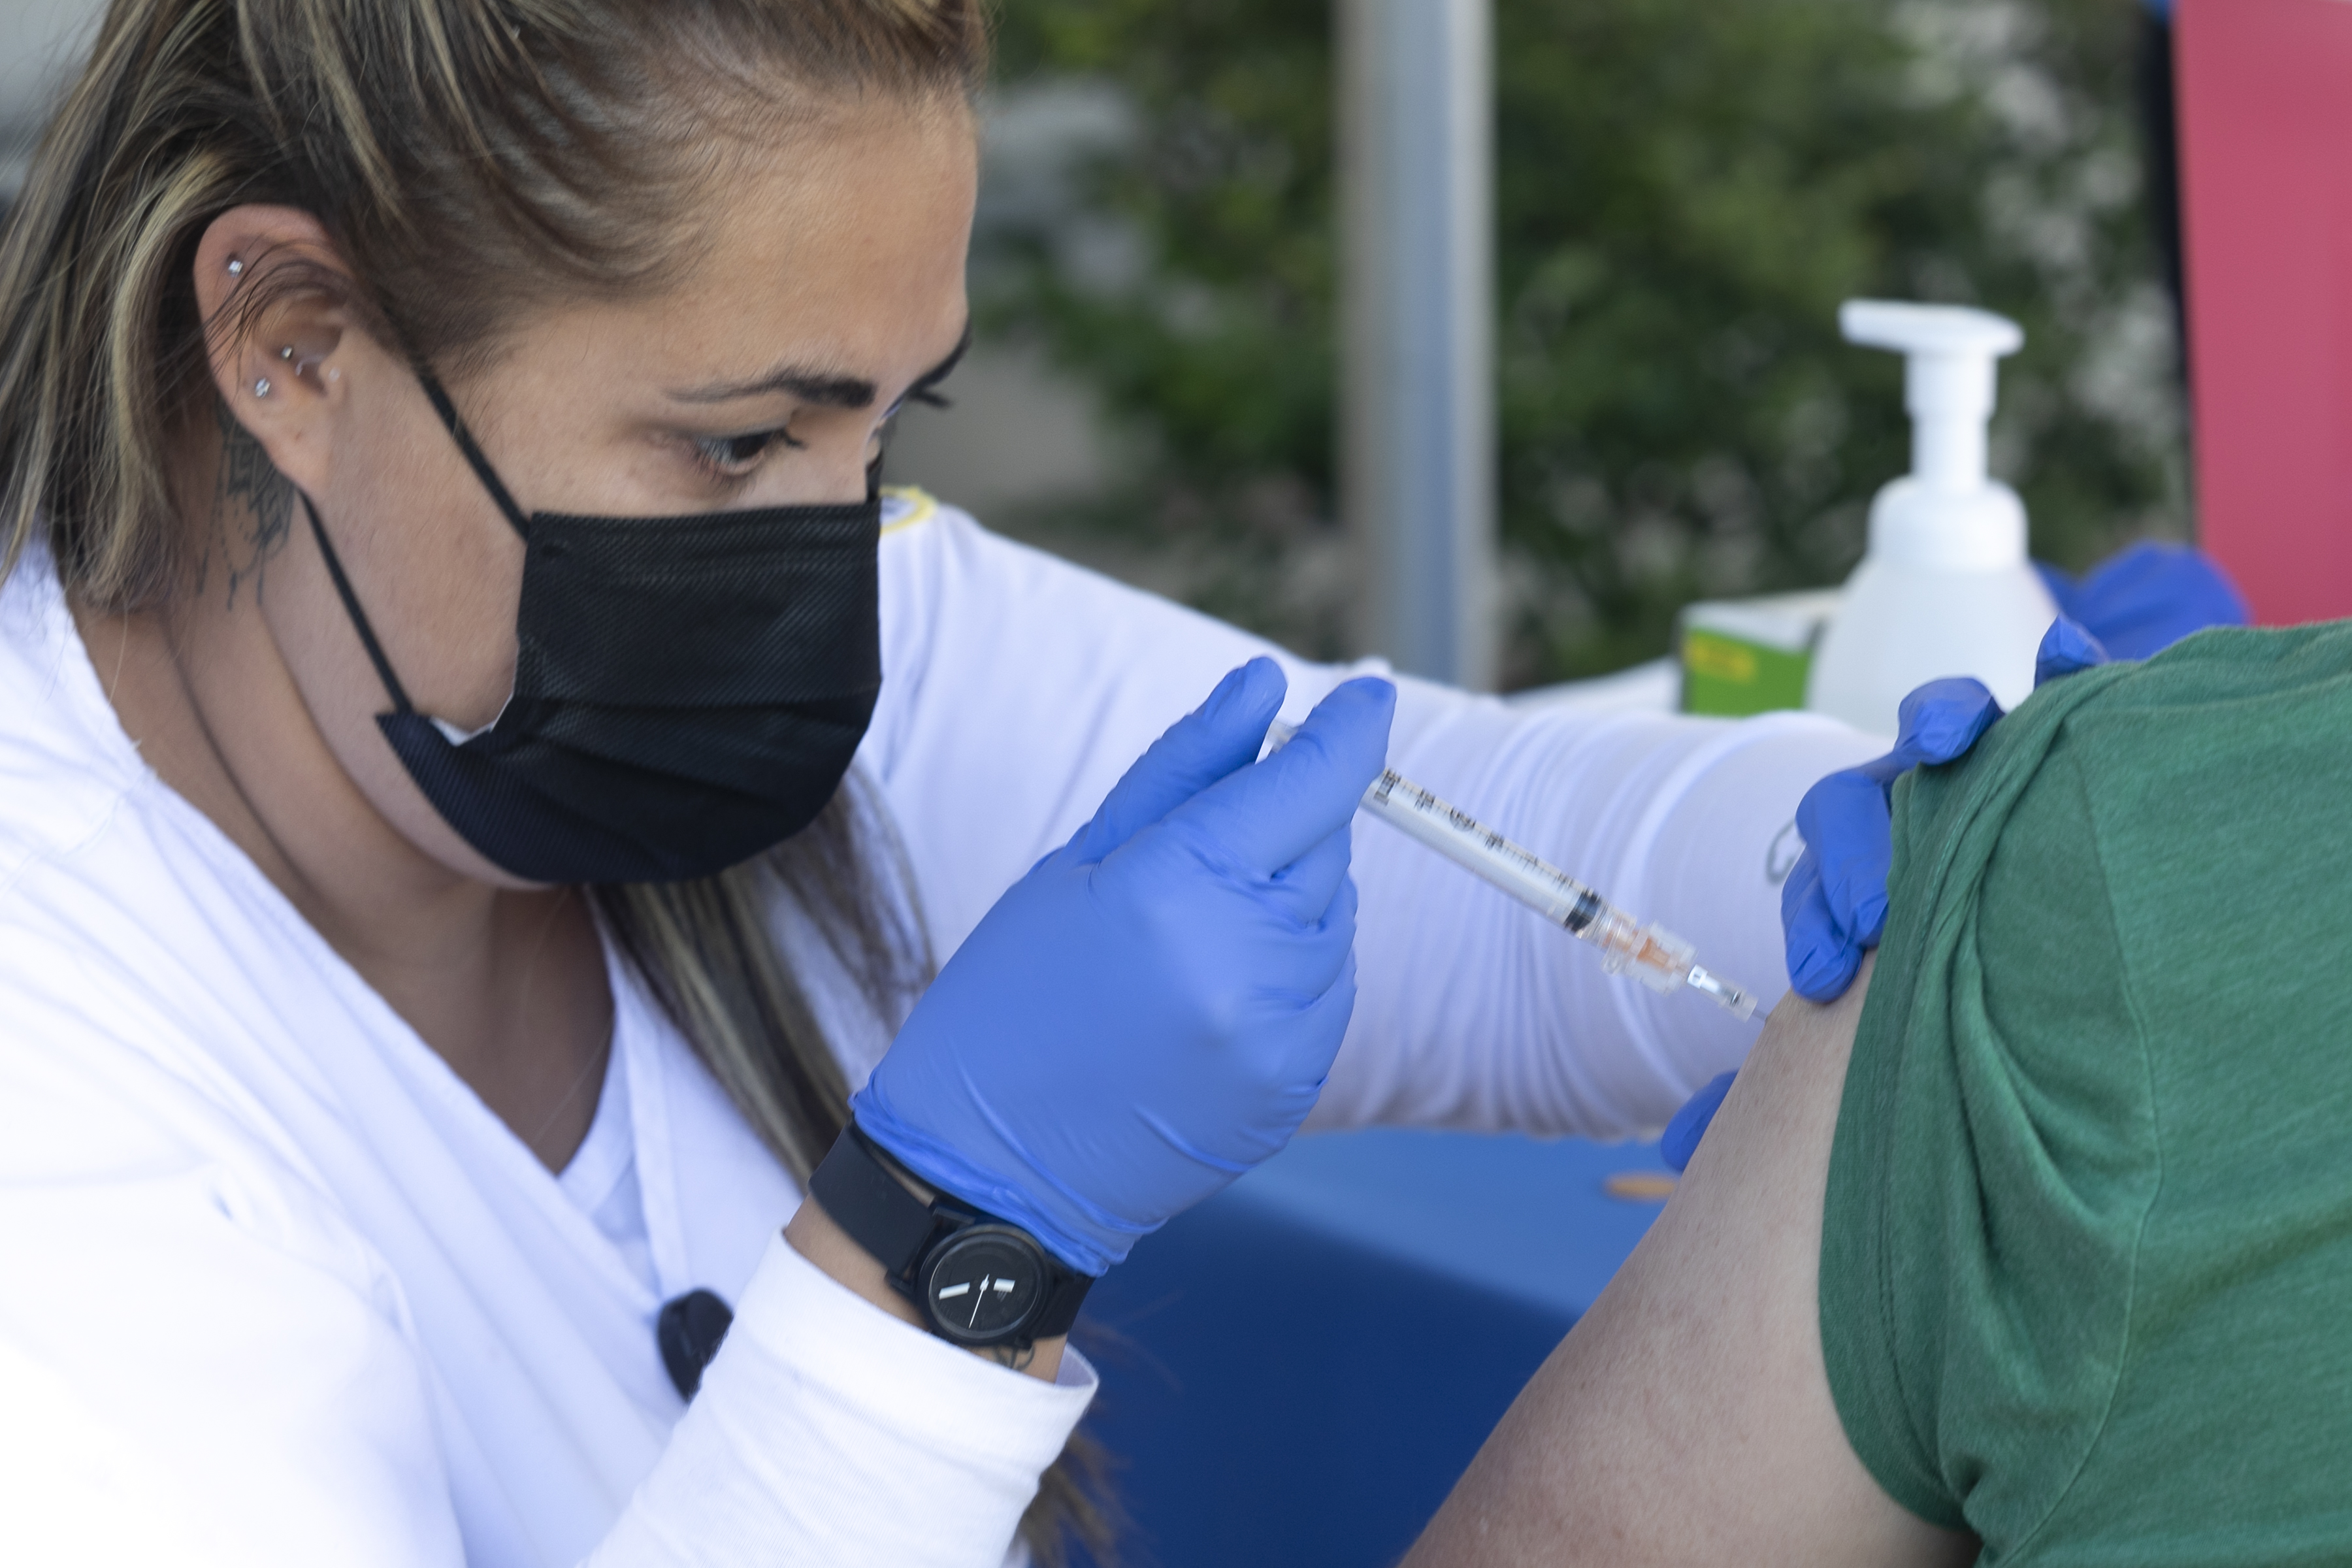 Nurse giving a vaccination